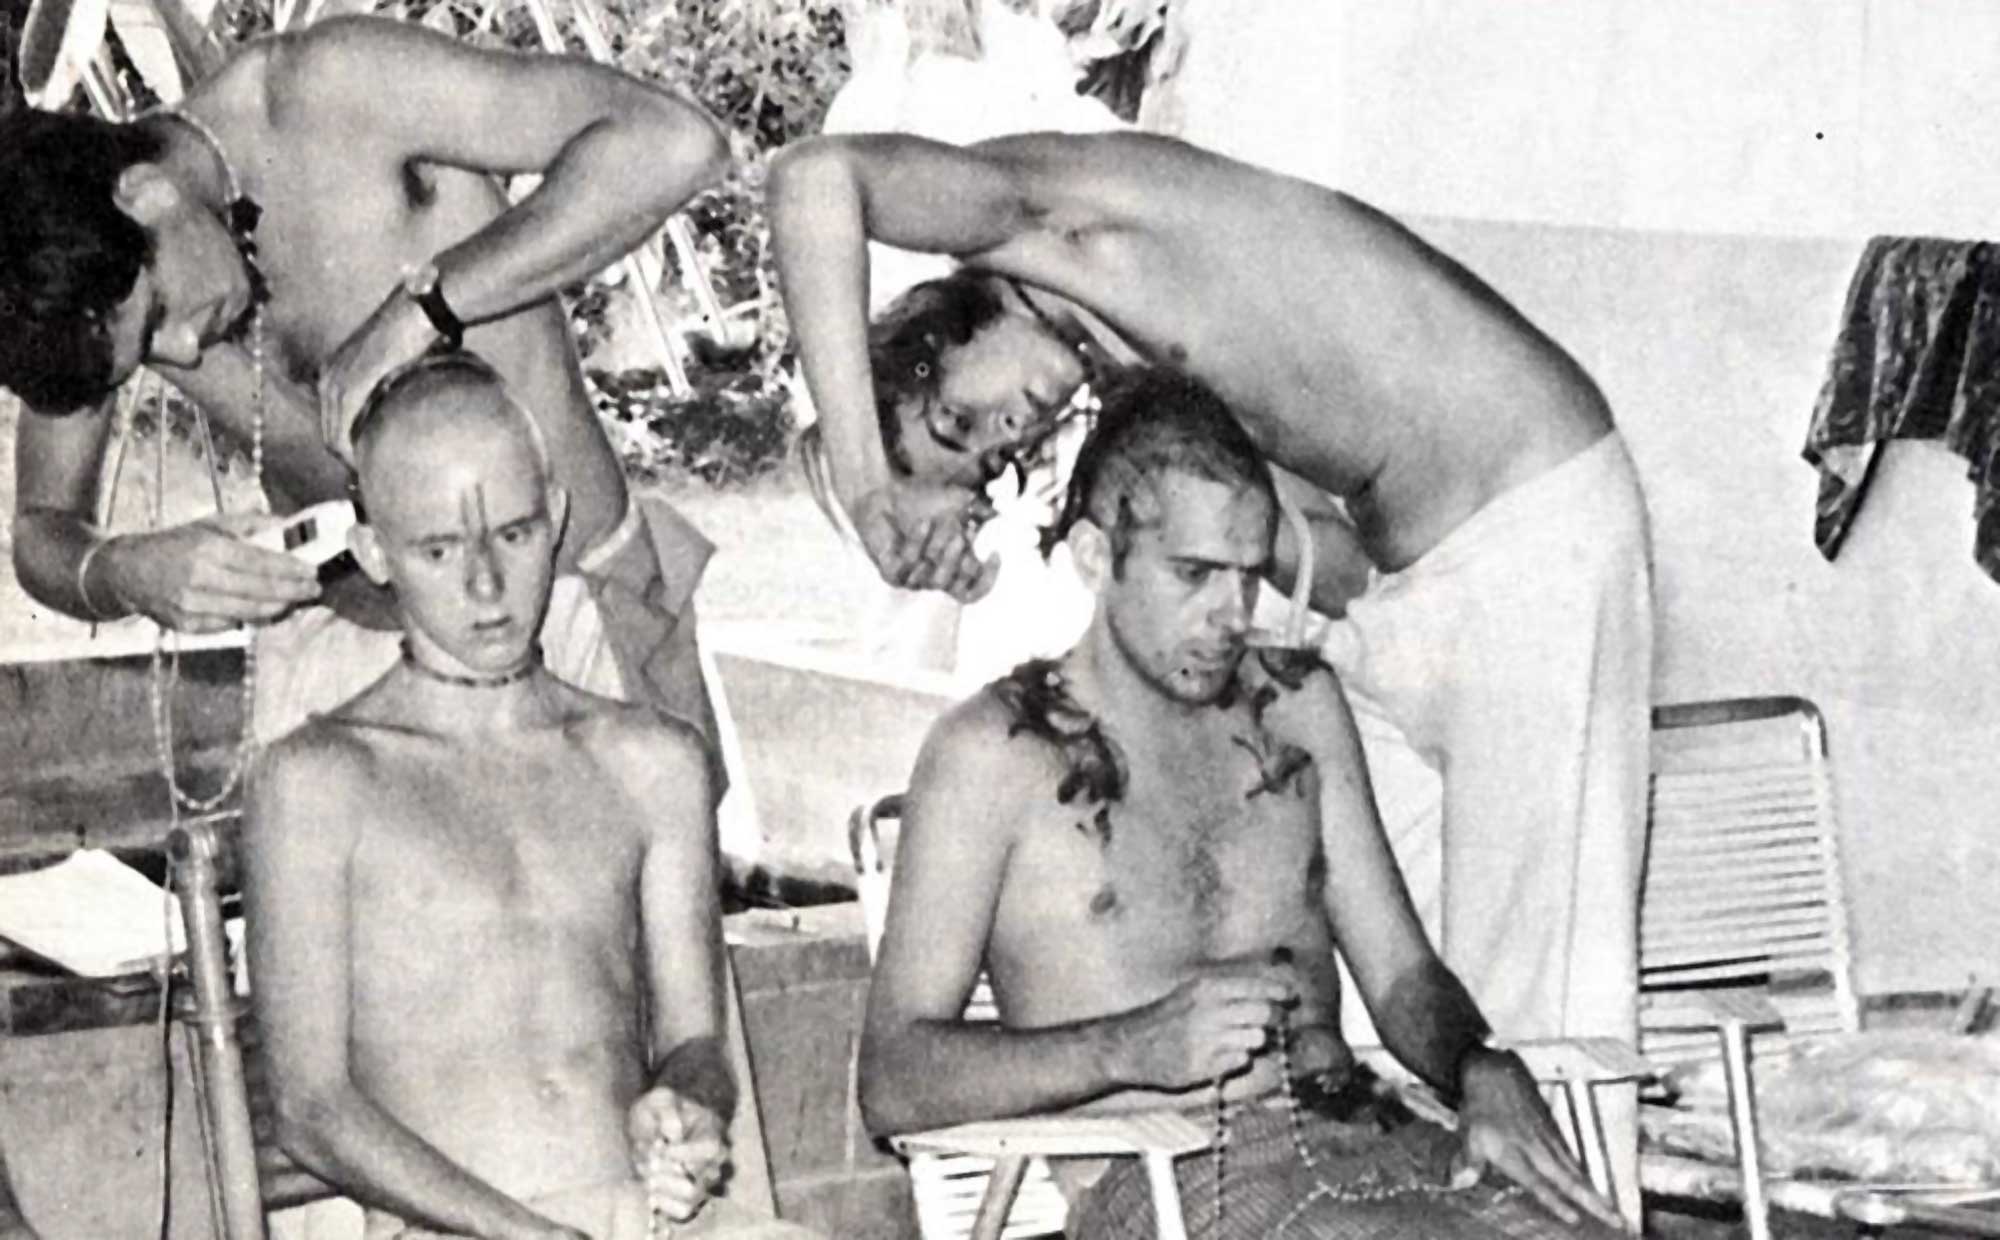 Members of KYC shaving up to join Iskcon - Swami Narasingha Maharaja Biography